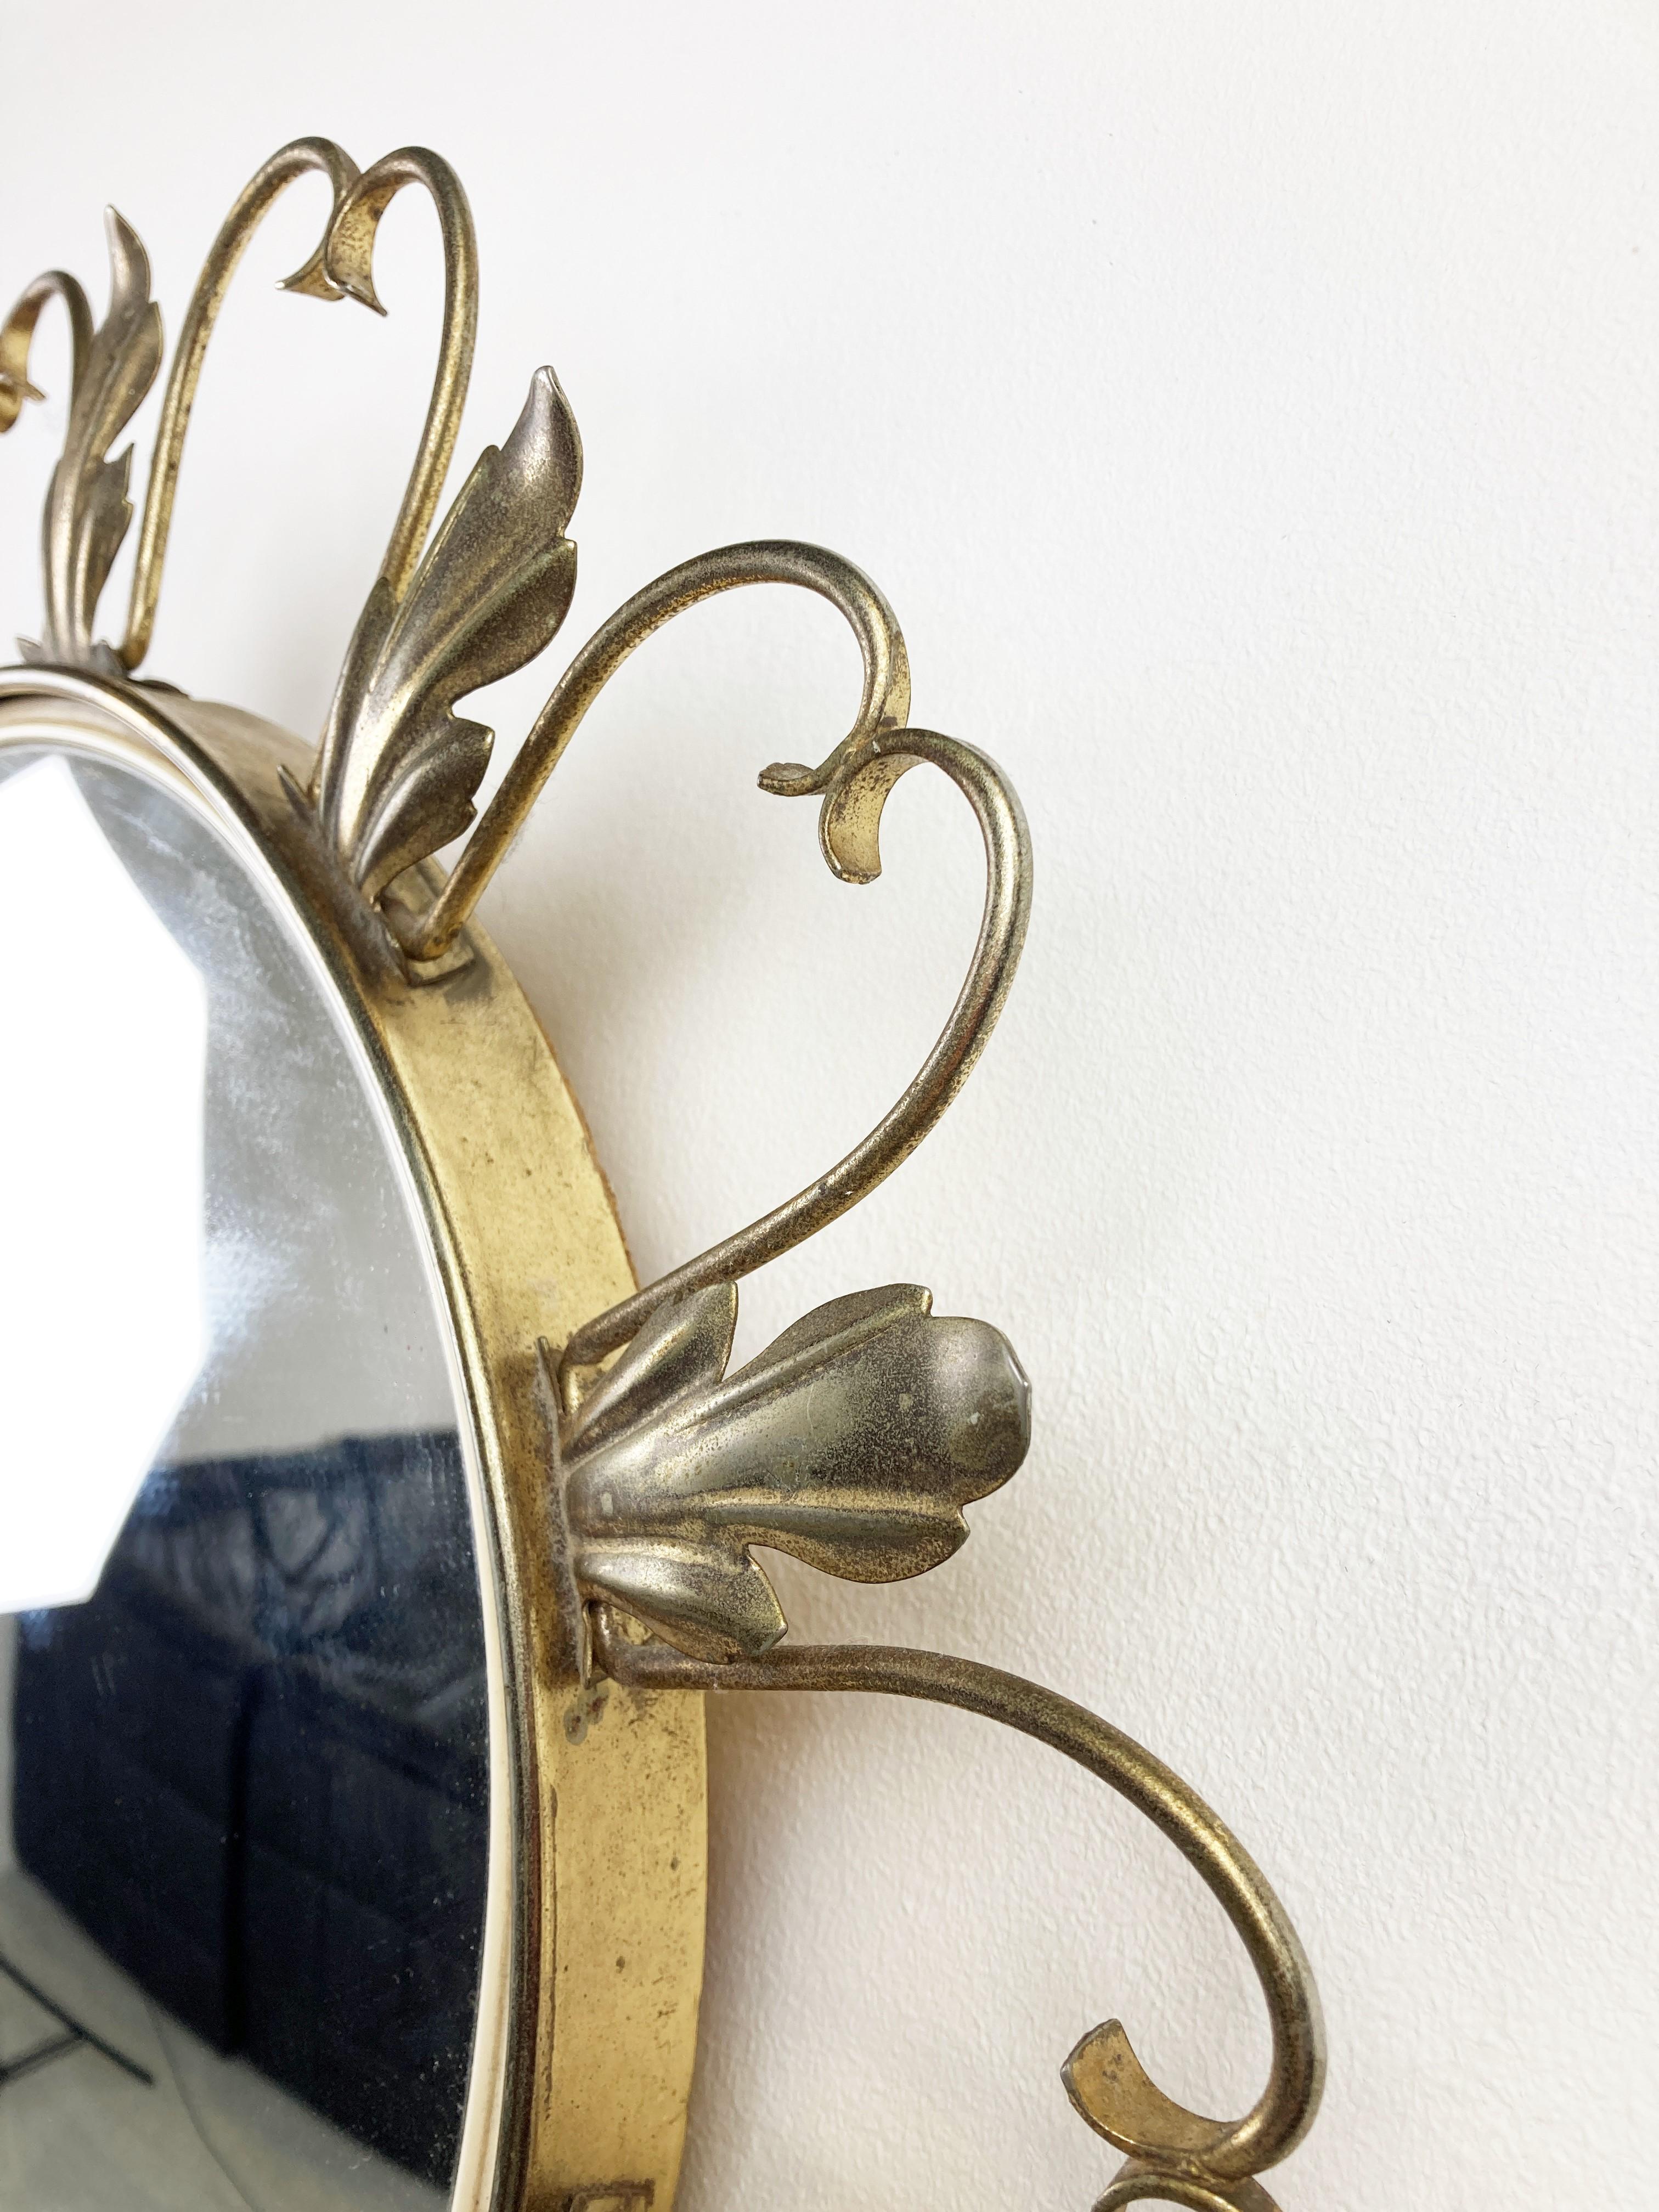 Sonnenschliff- oder Blumenspiegel aus der Mitte des Jahrhunderts aus Messing mit konvexem Glas.

Dieser Spiegel passt in die meisten Innenräume und ist eine perfekte Ergänzung für eine Einrichtung im Regency-Stil.

Guter Zustand.

Frankreich -